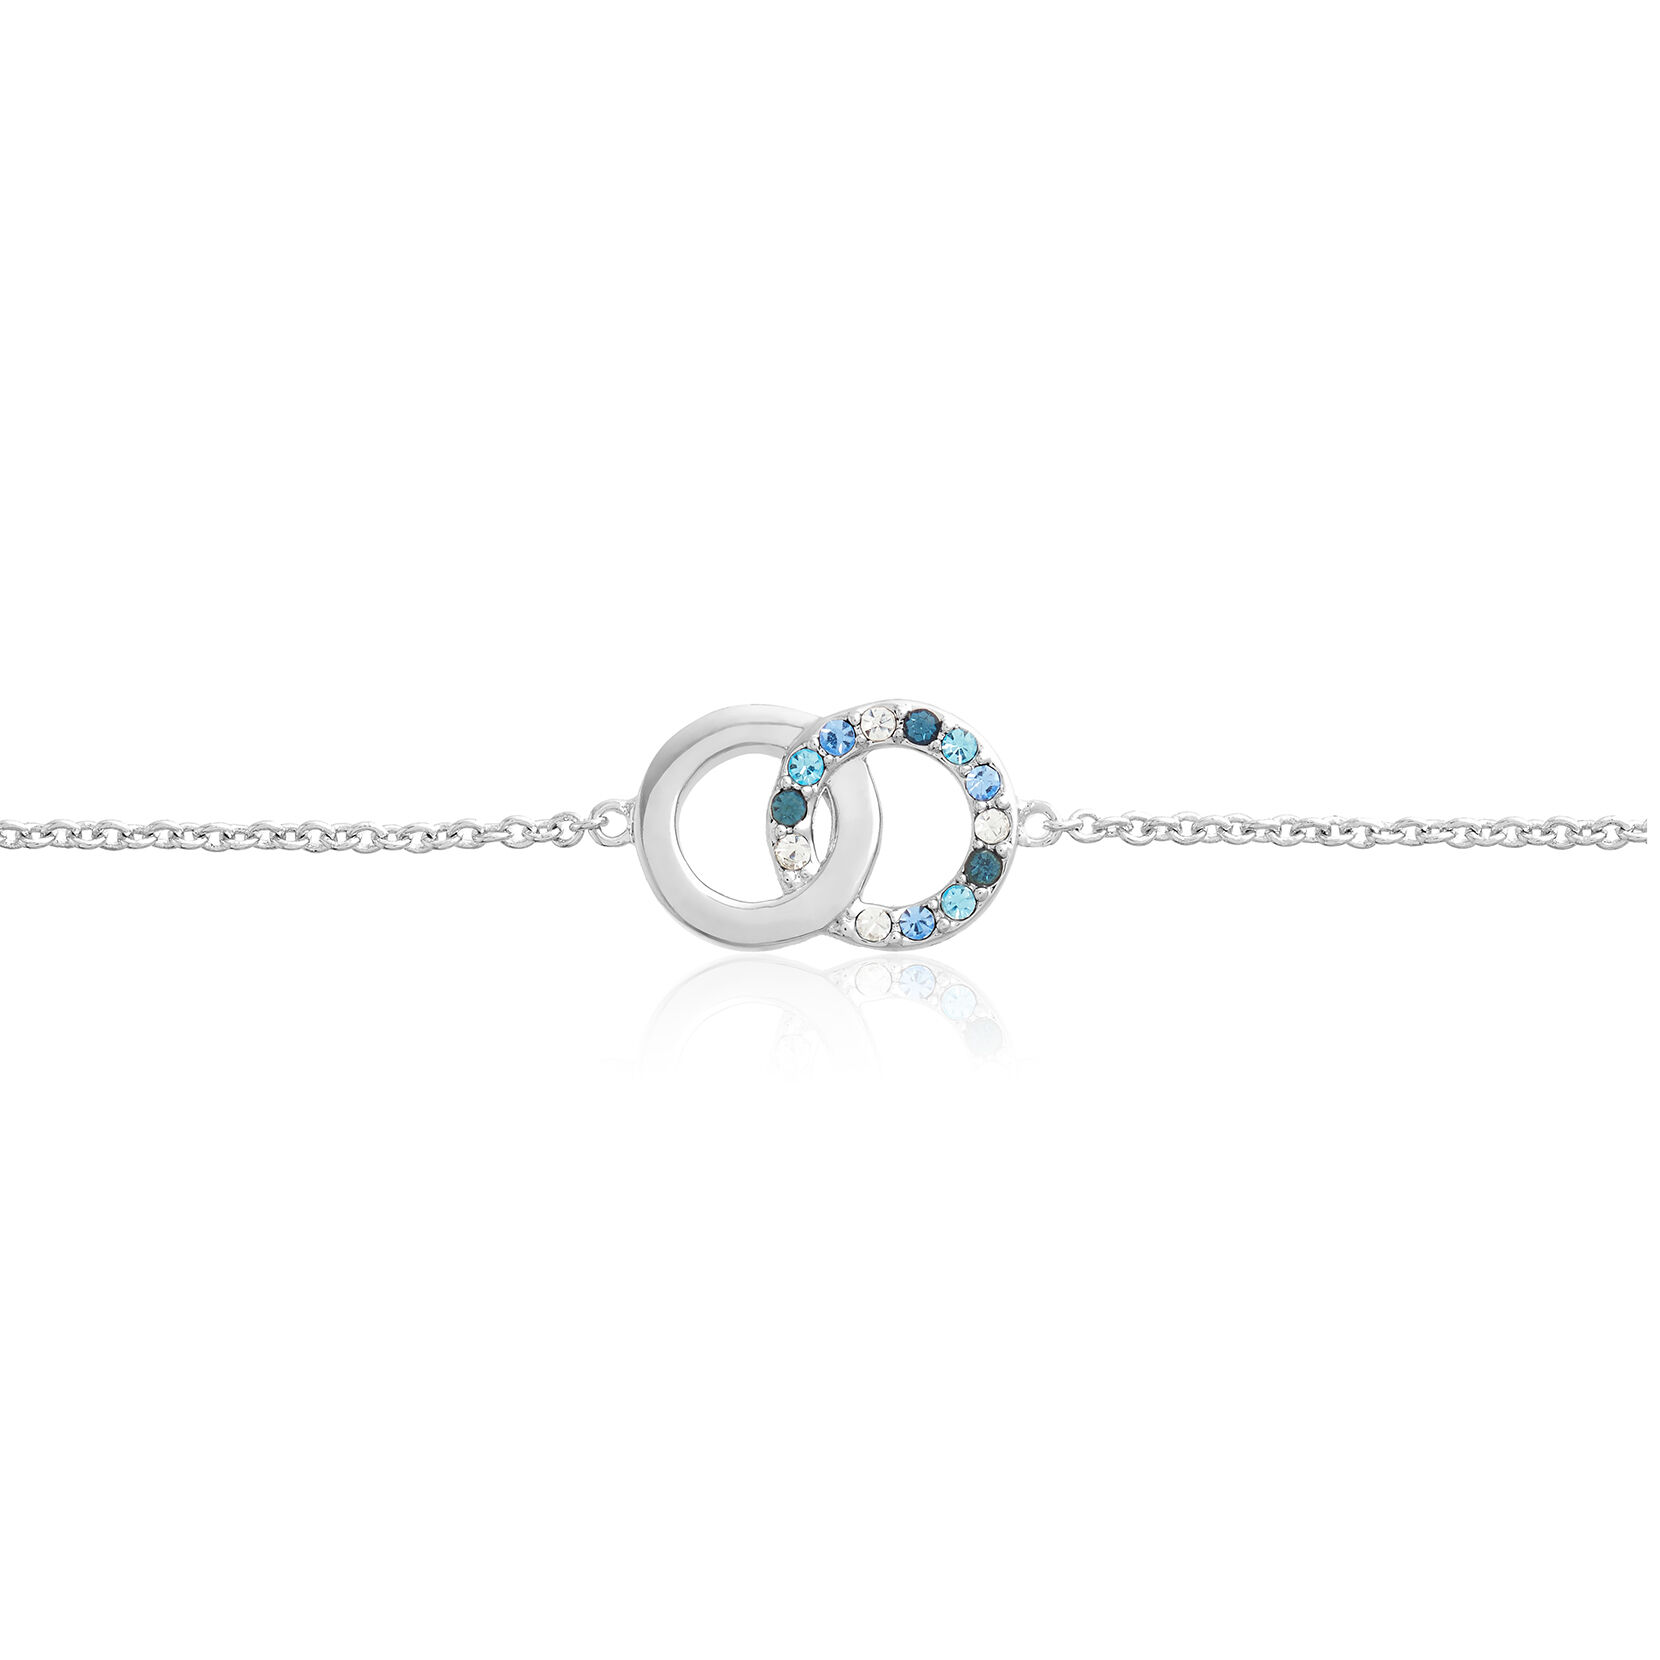 Coffret-cadeau avec montre Wonderland Blue Crystal et bracelet Interlink argent